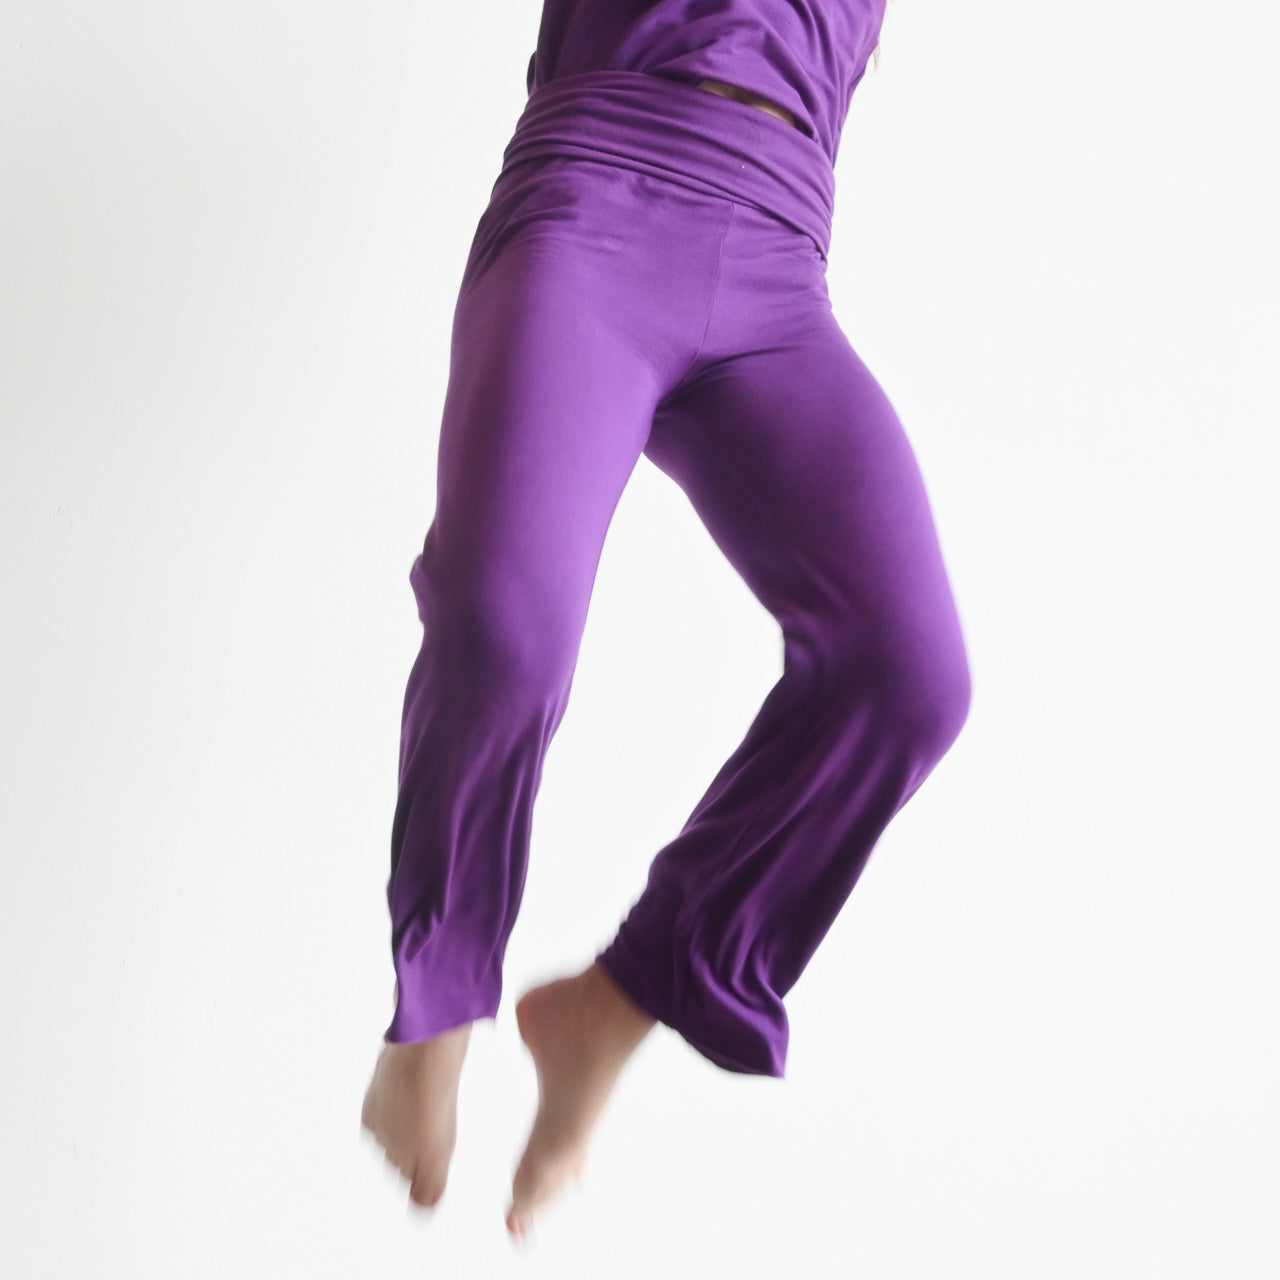 Girl in Yoga pants - Girl  Purple yoga pants, Pants for women, Yoga pants